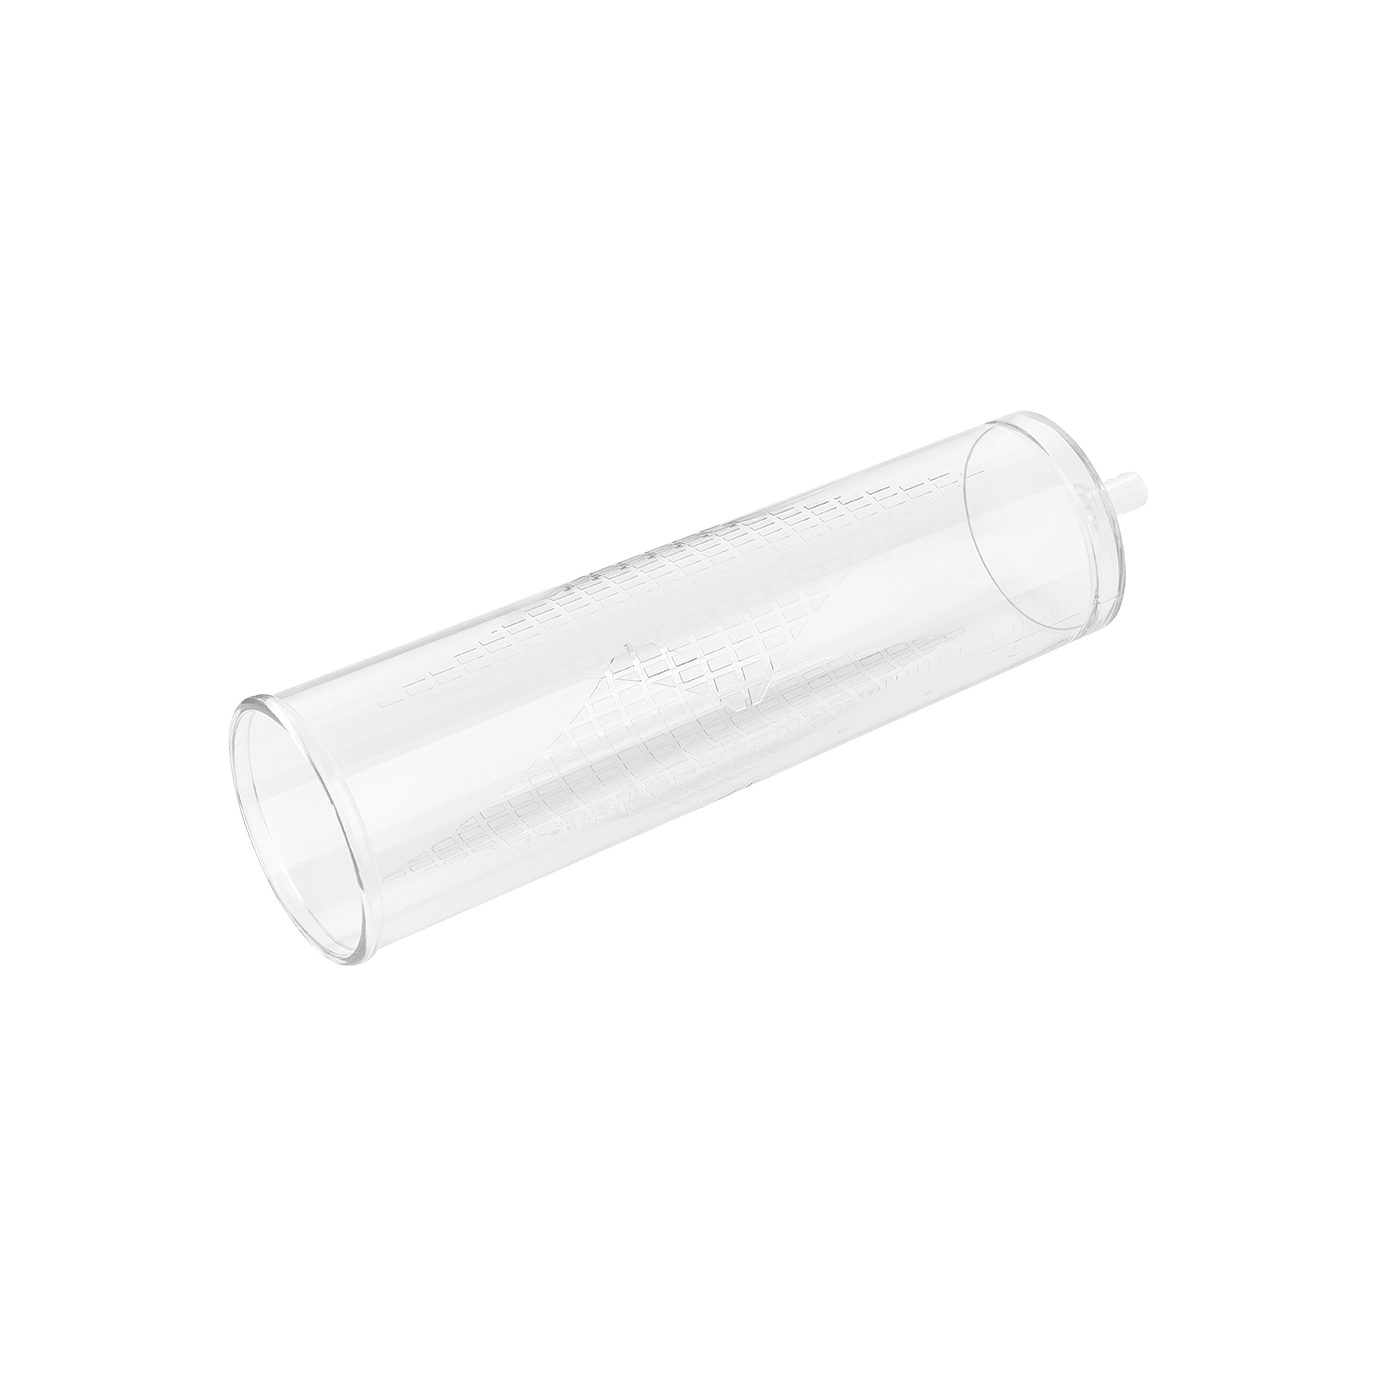 Elektrische Handpumpe, Erektion; Eichel-Masturbator EIS mit Handpumpe transparent EIS praktische Silikon-Manschette, Penispumpe prallere 24cm,